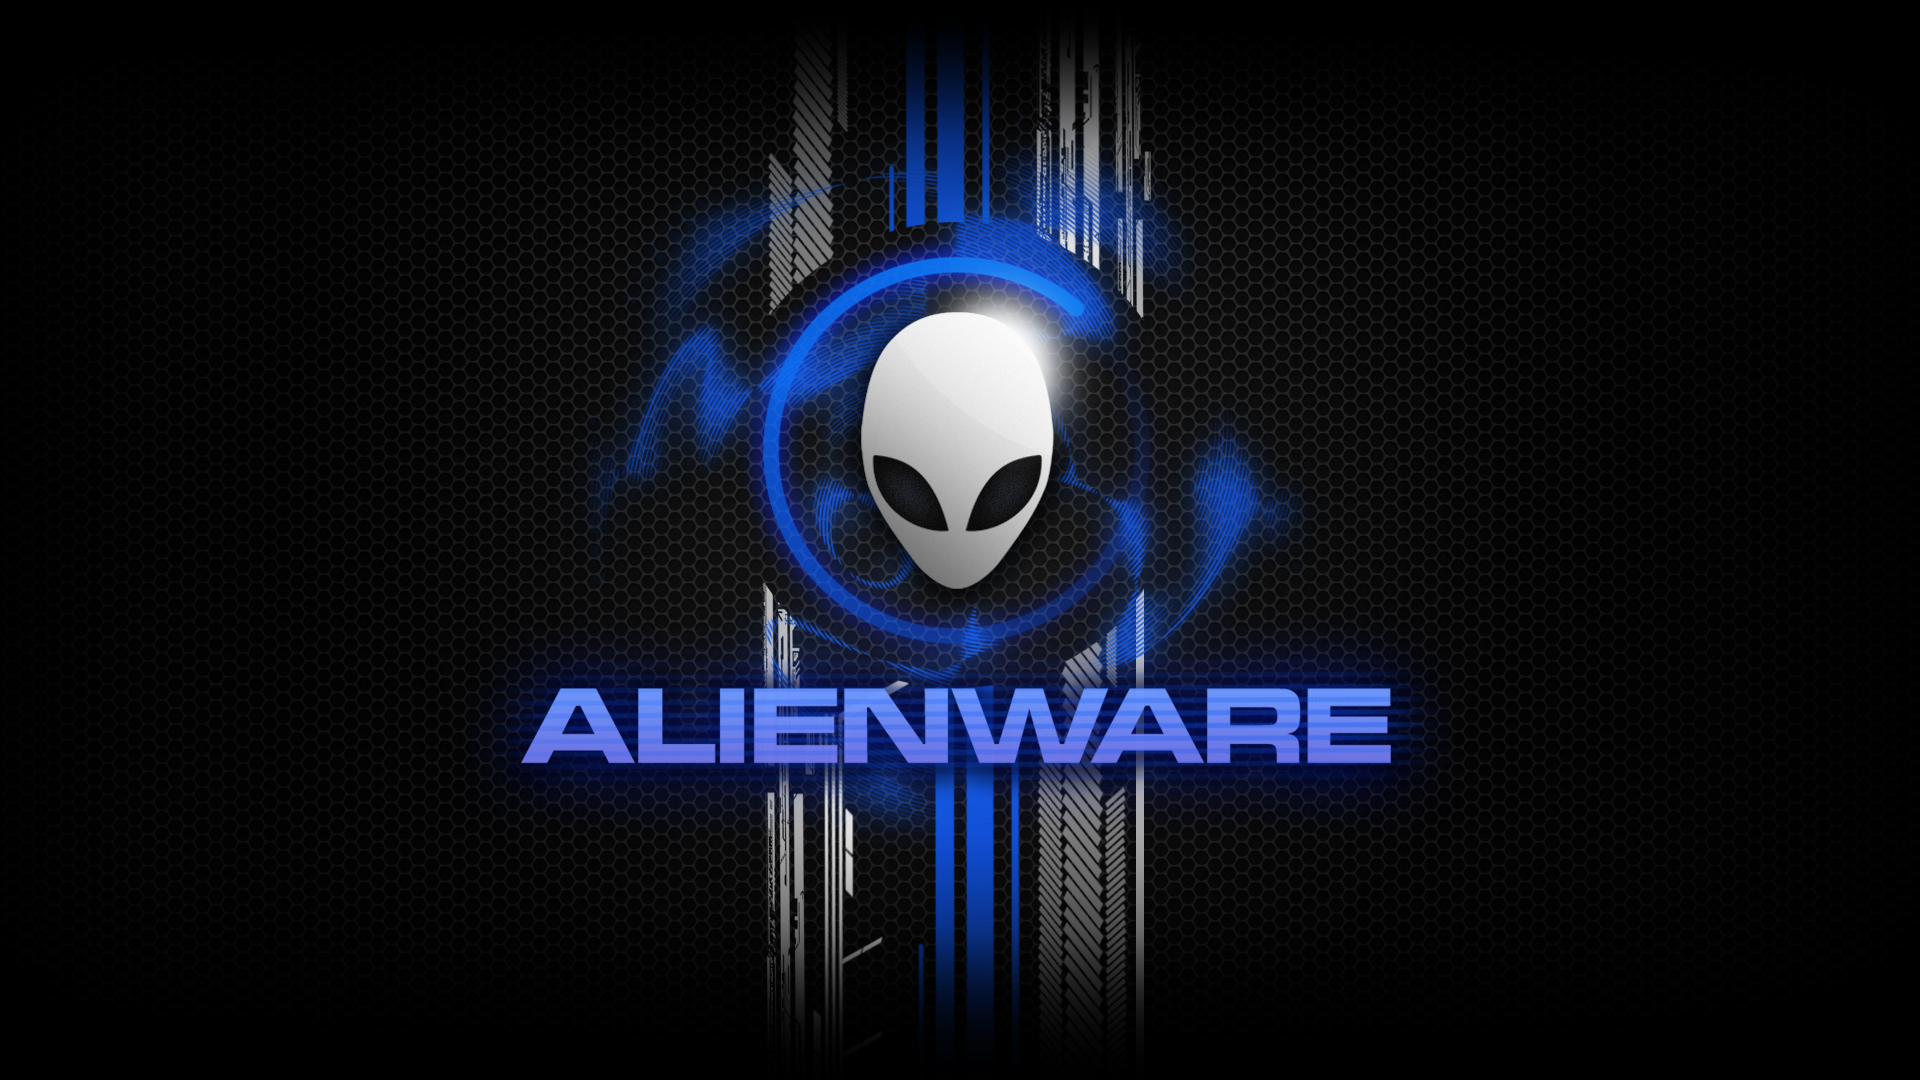 Alienware-Desktop-Background-Alienware-Head-Blue-Honeycomb-Design-1920x1080.jpg